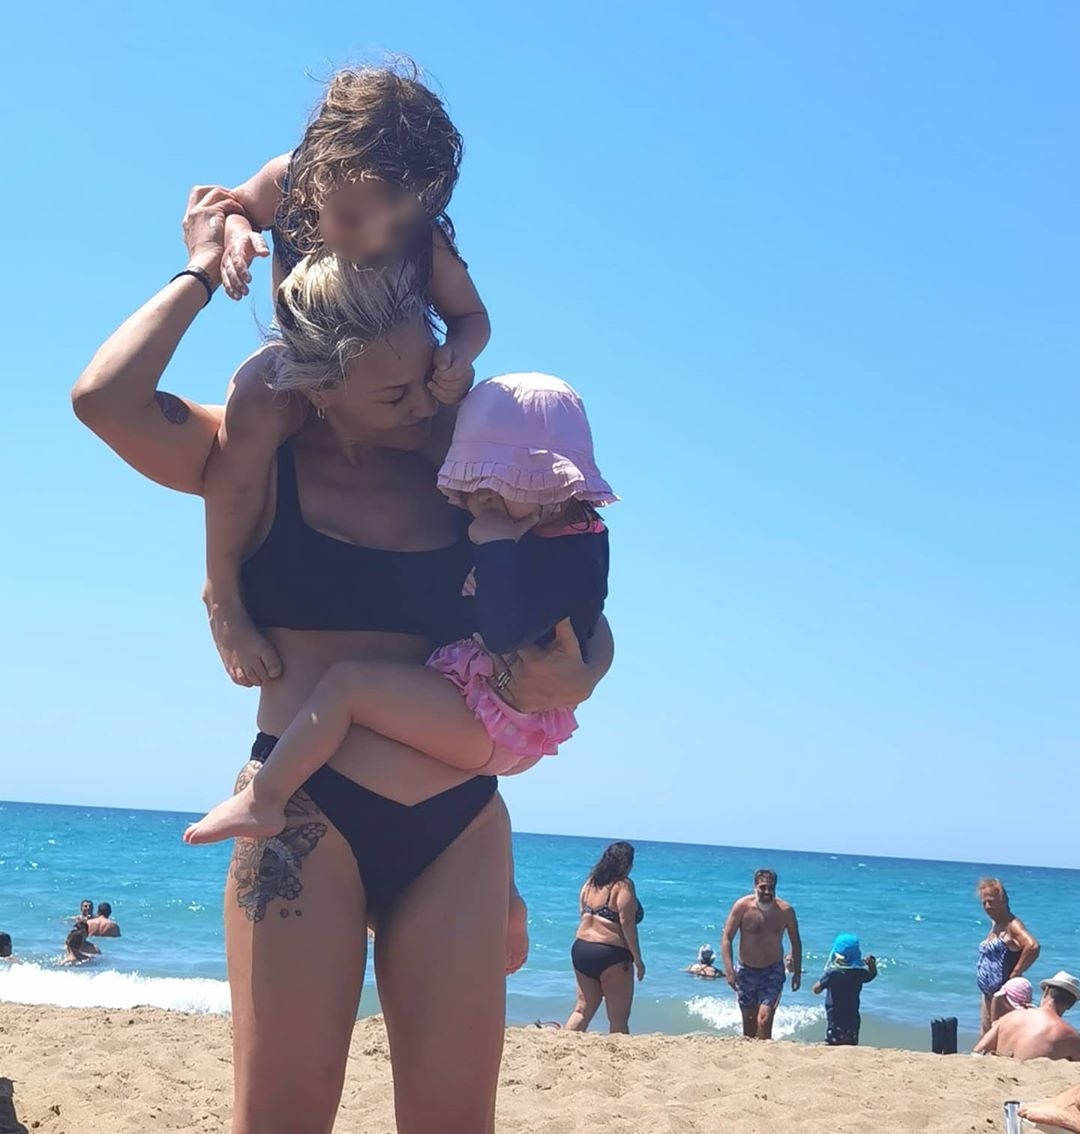 Πηνελόπη Αναστασοπούλου: Στη θάλασσα με τις κόρες της- Ευτυχισμένη μαμά και κορμάρα! (εικόνες)